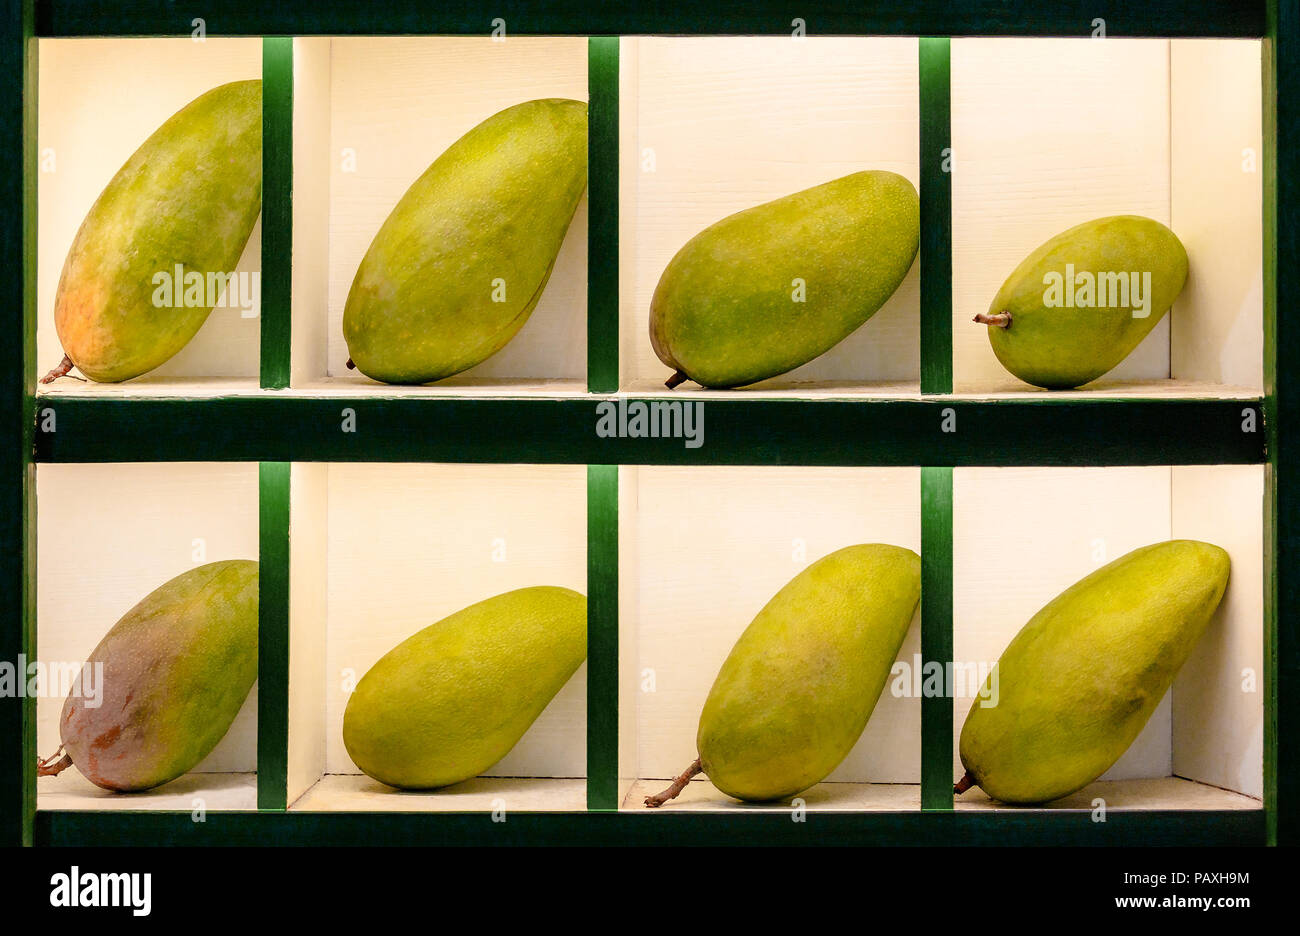 Grün reife Mango Früchte sind stilvoll in separaten Zellen für den Verkauf  in den Asiatischen orientalischer Markt vorgestellt. Tolle Qualität  Merchandising Stockfotografie - Alamy